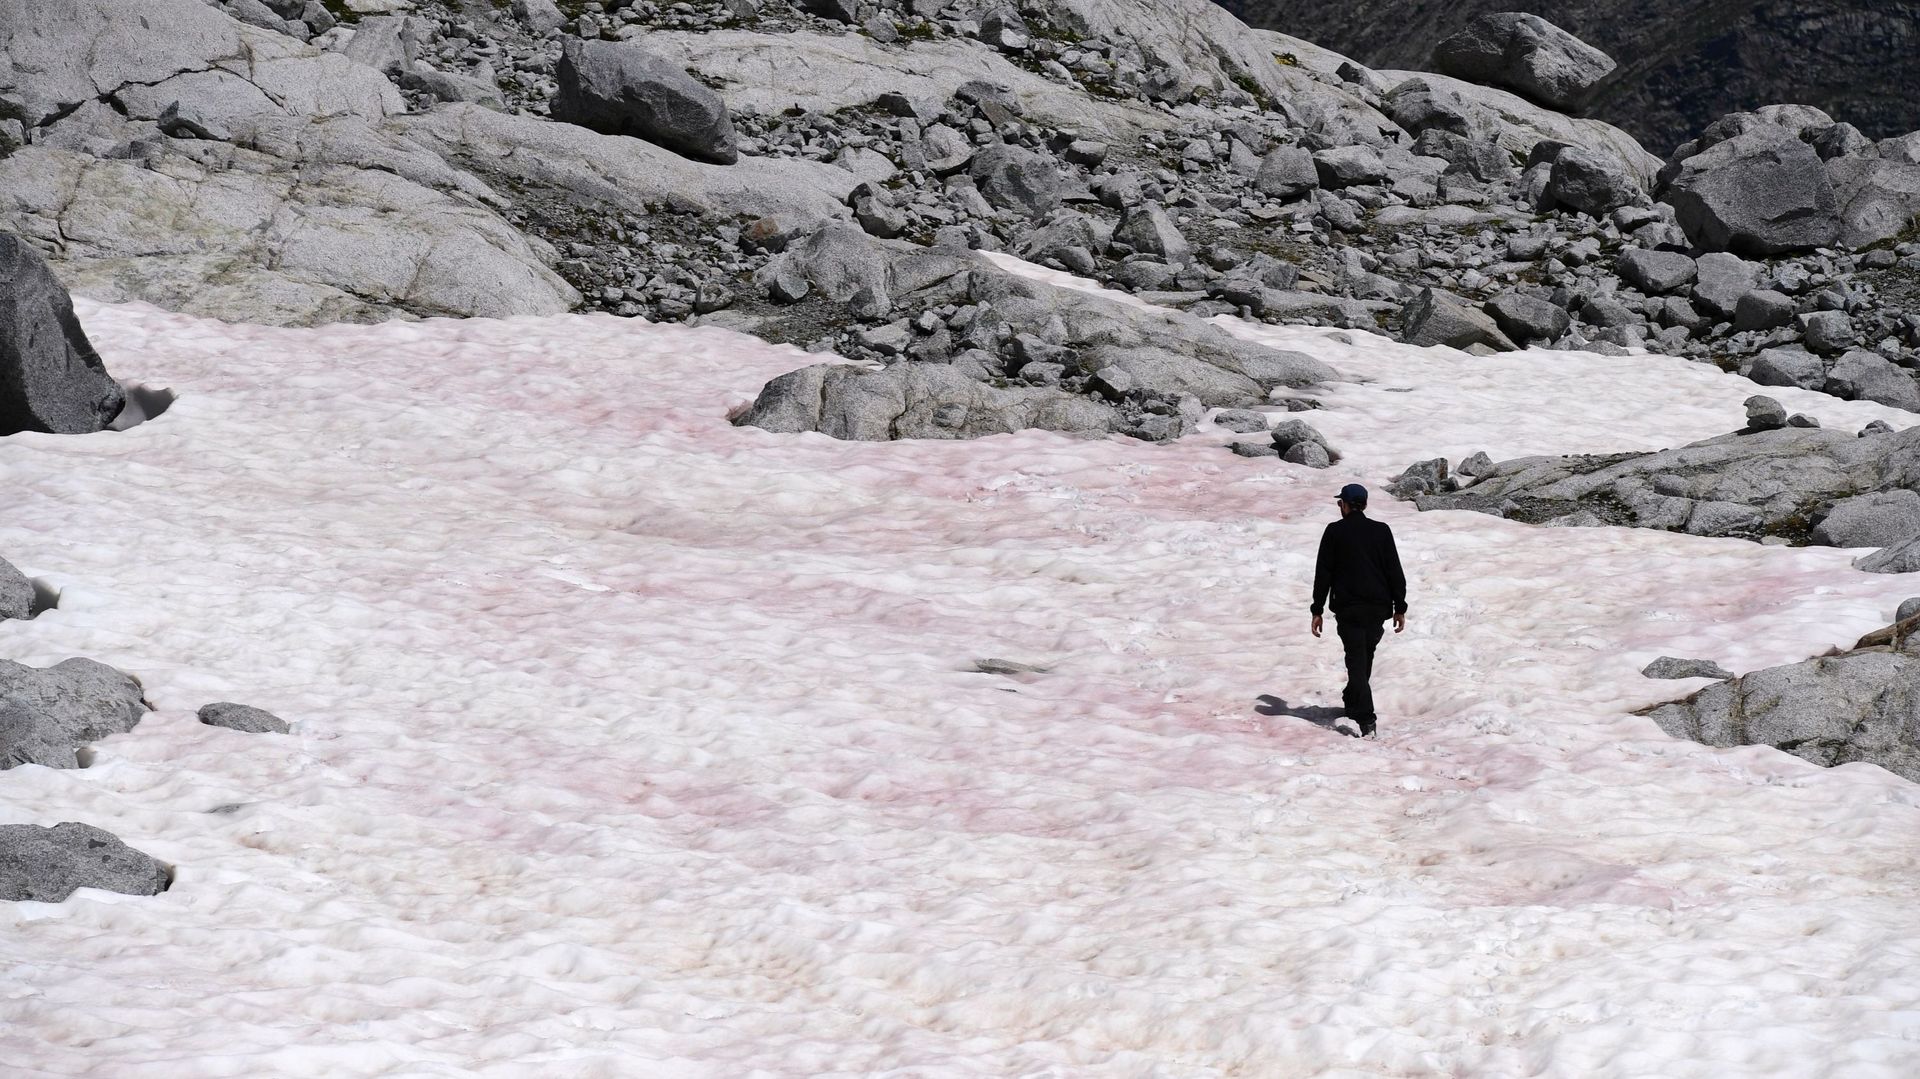 La mystérieuse neige rose d'un glacier des Alpes italiennes